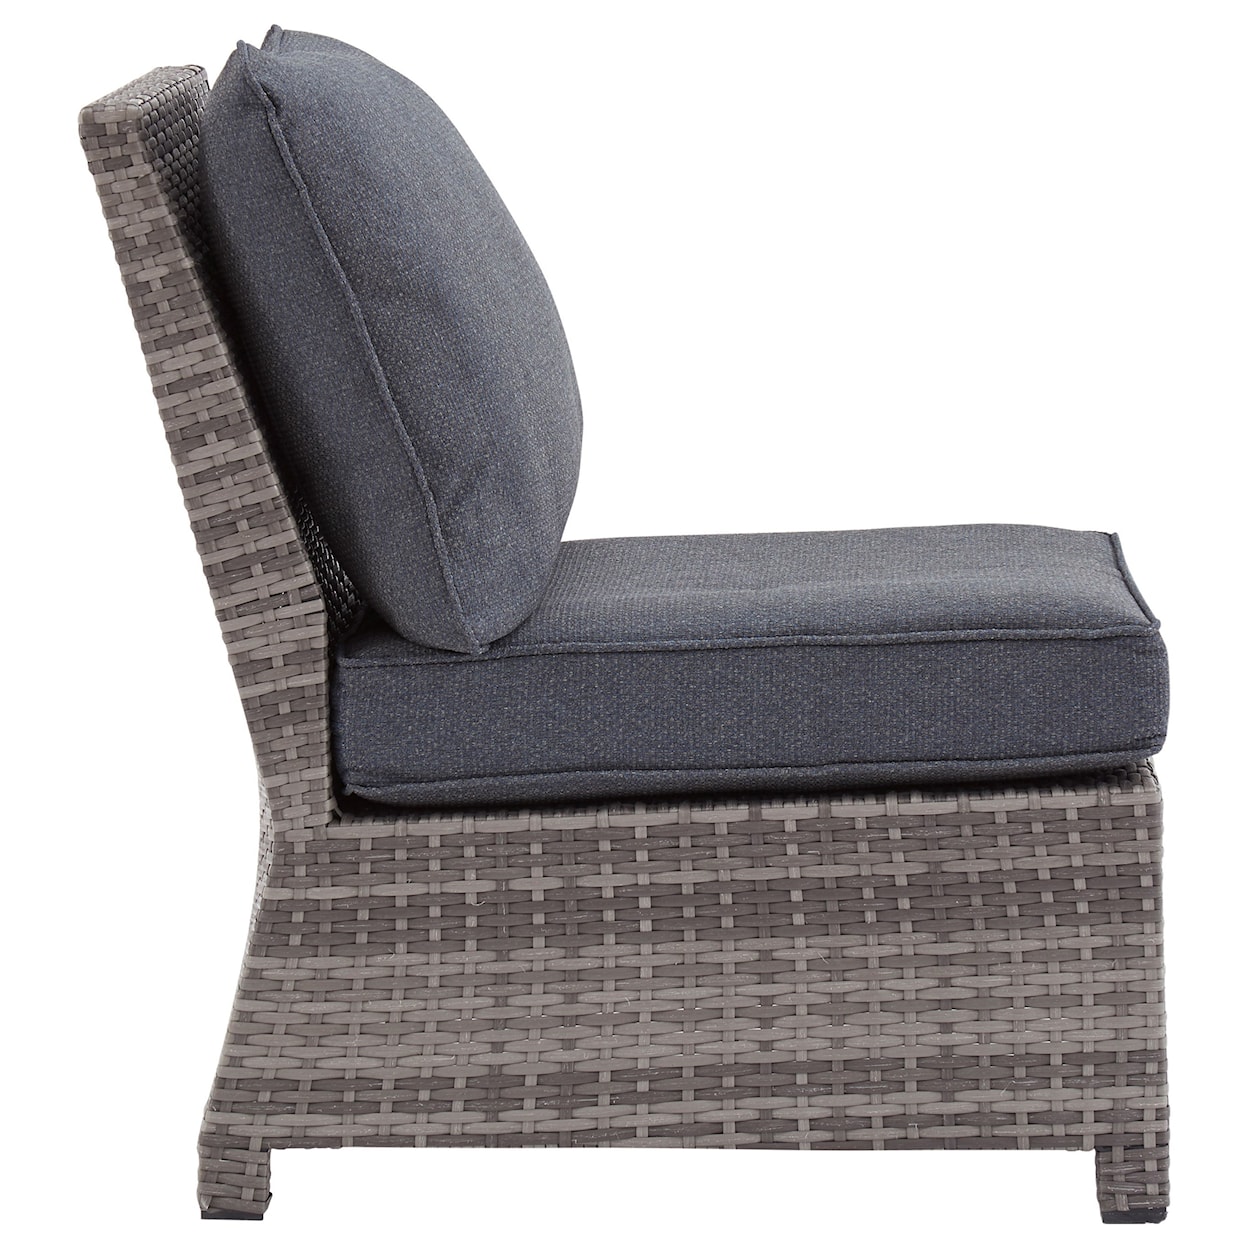 Michael Alan Select Salem Beach Armless Chair with Cushion